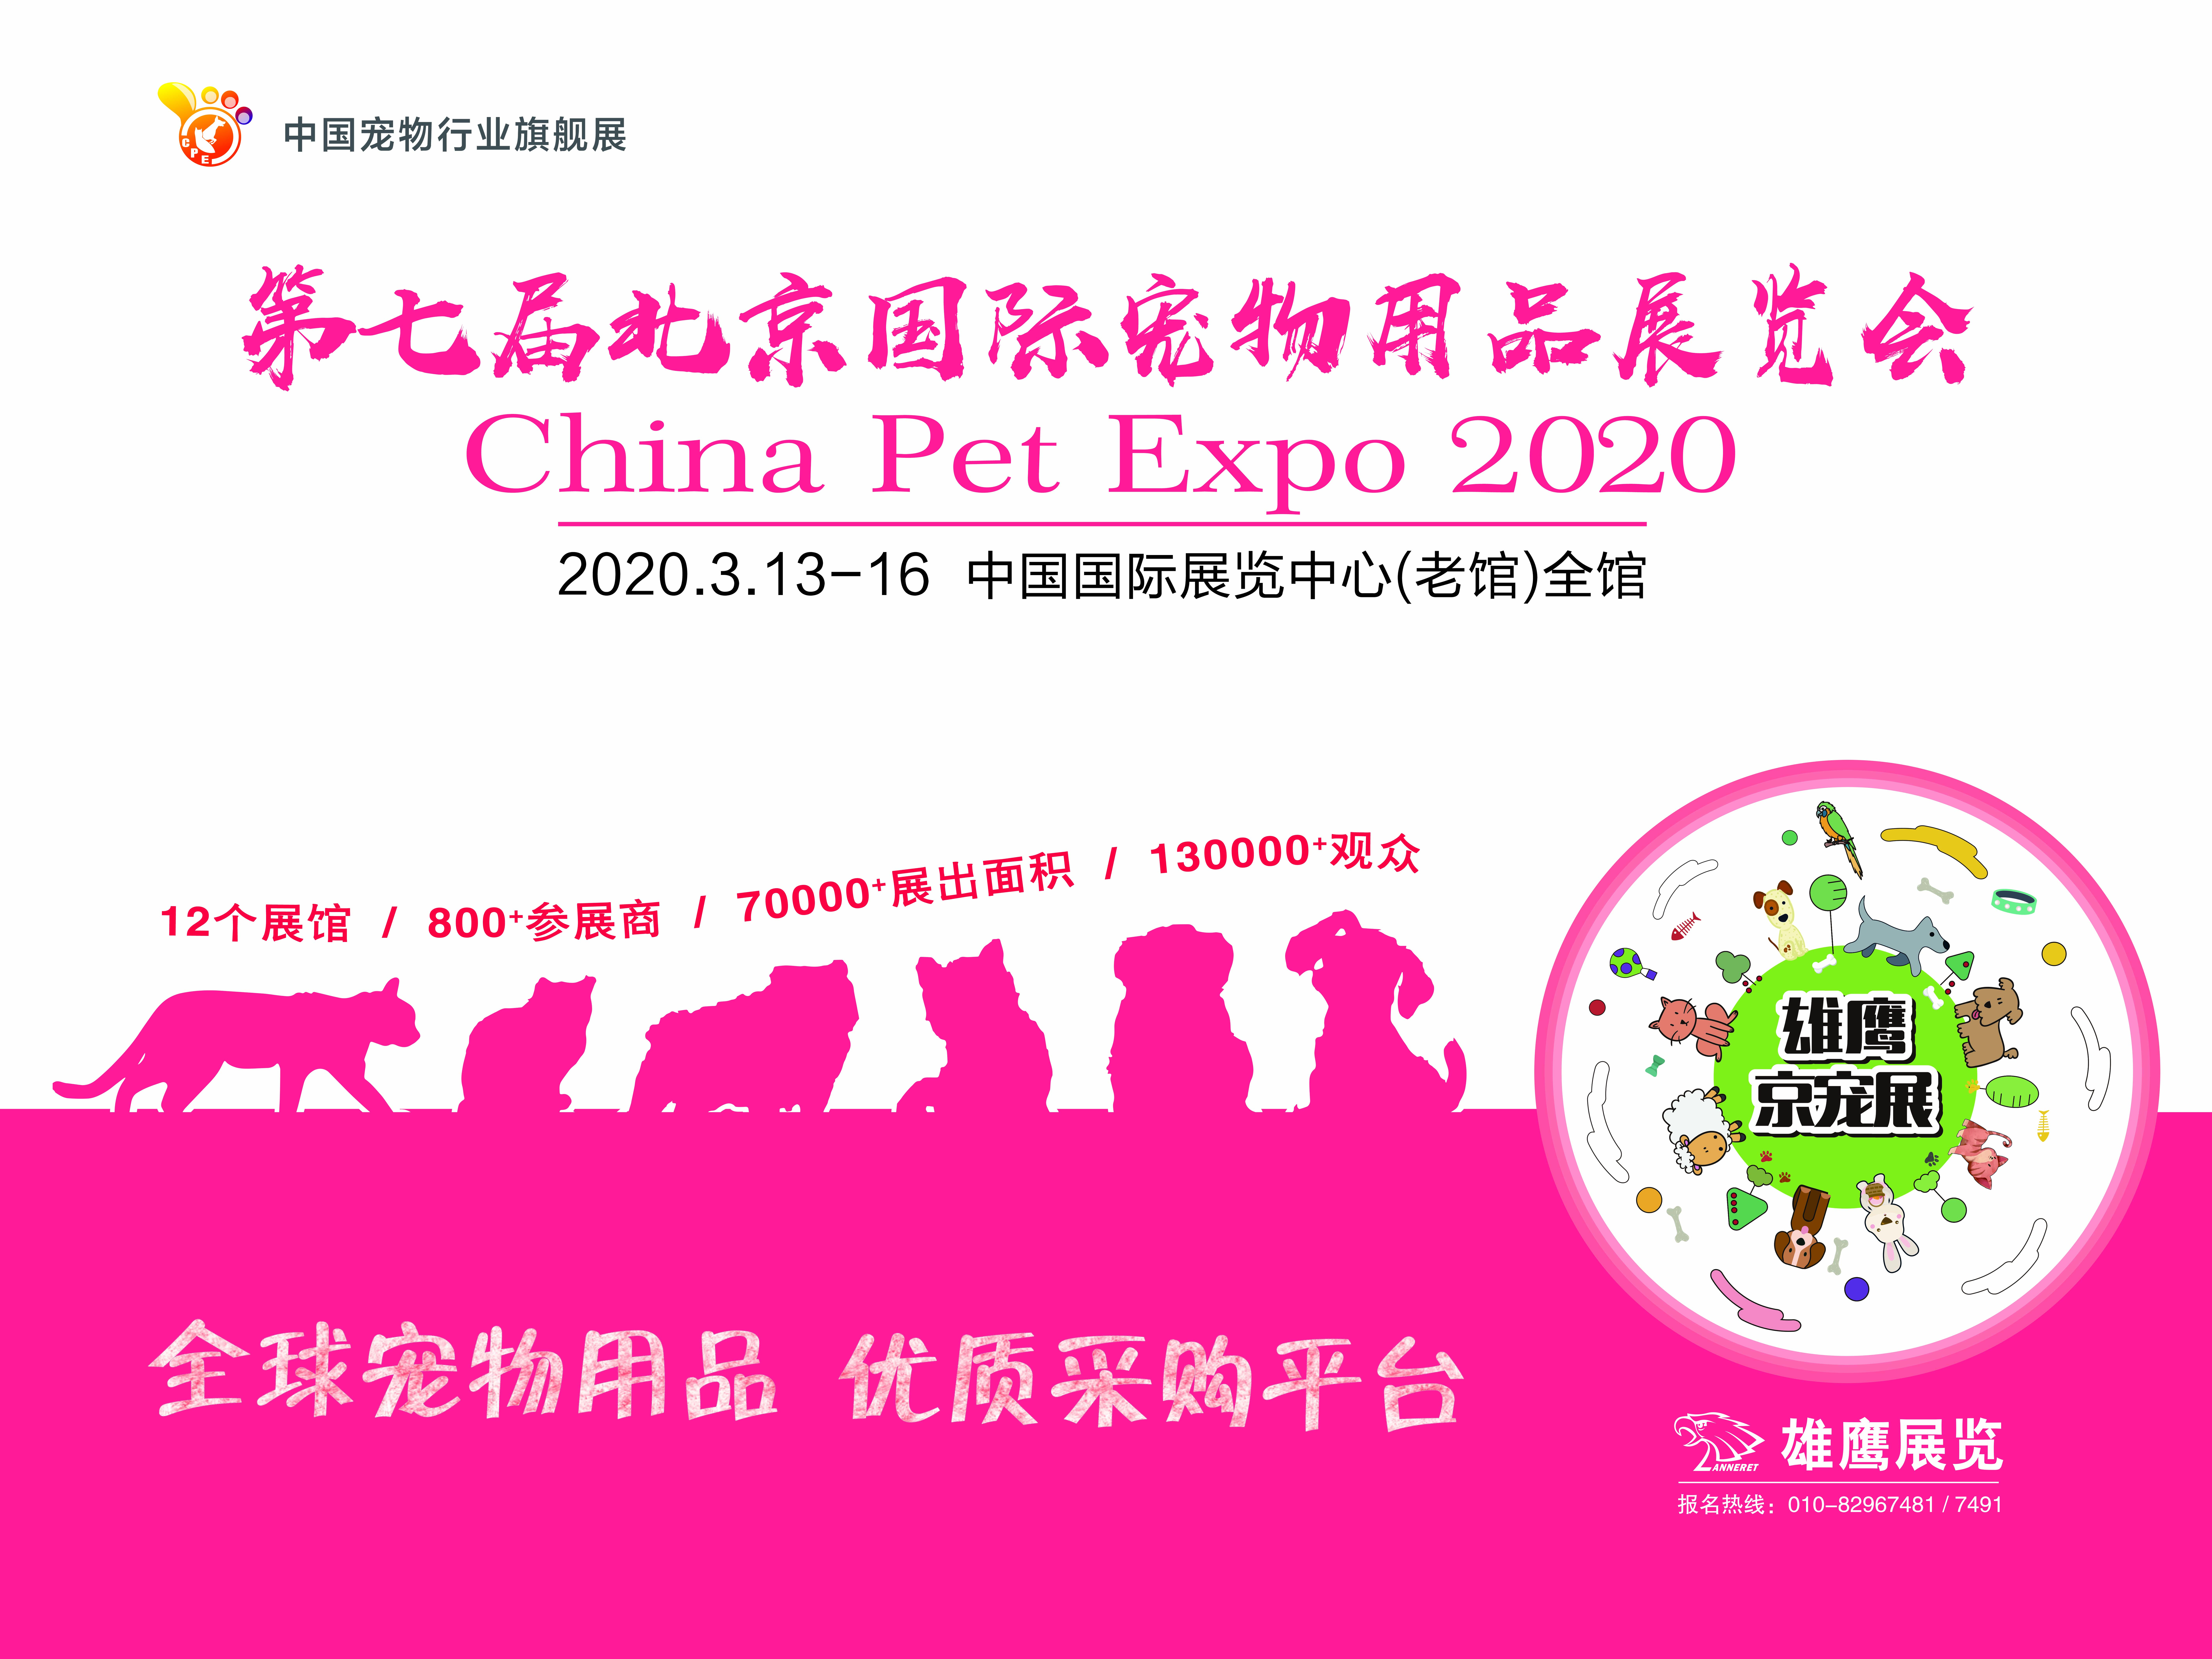 年度宠界盛事,在北京搞个大的宠物用品展览会!